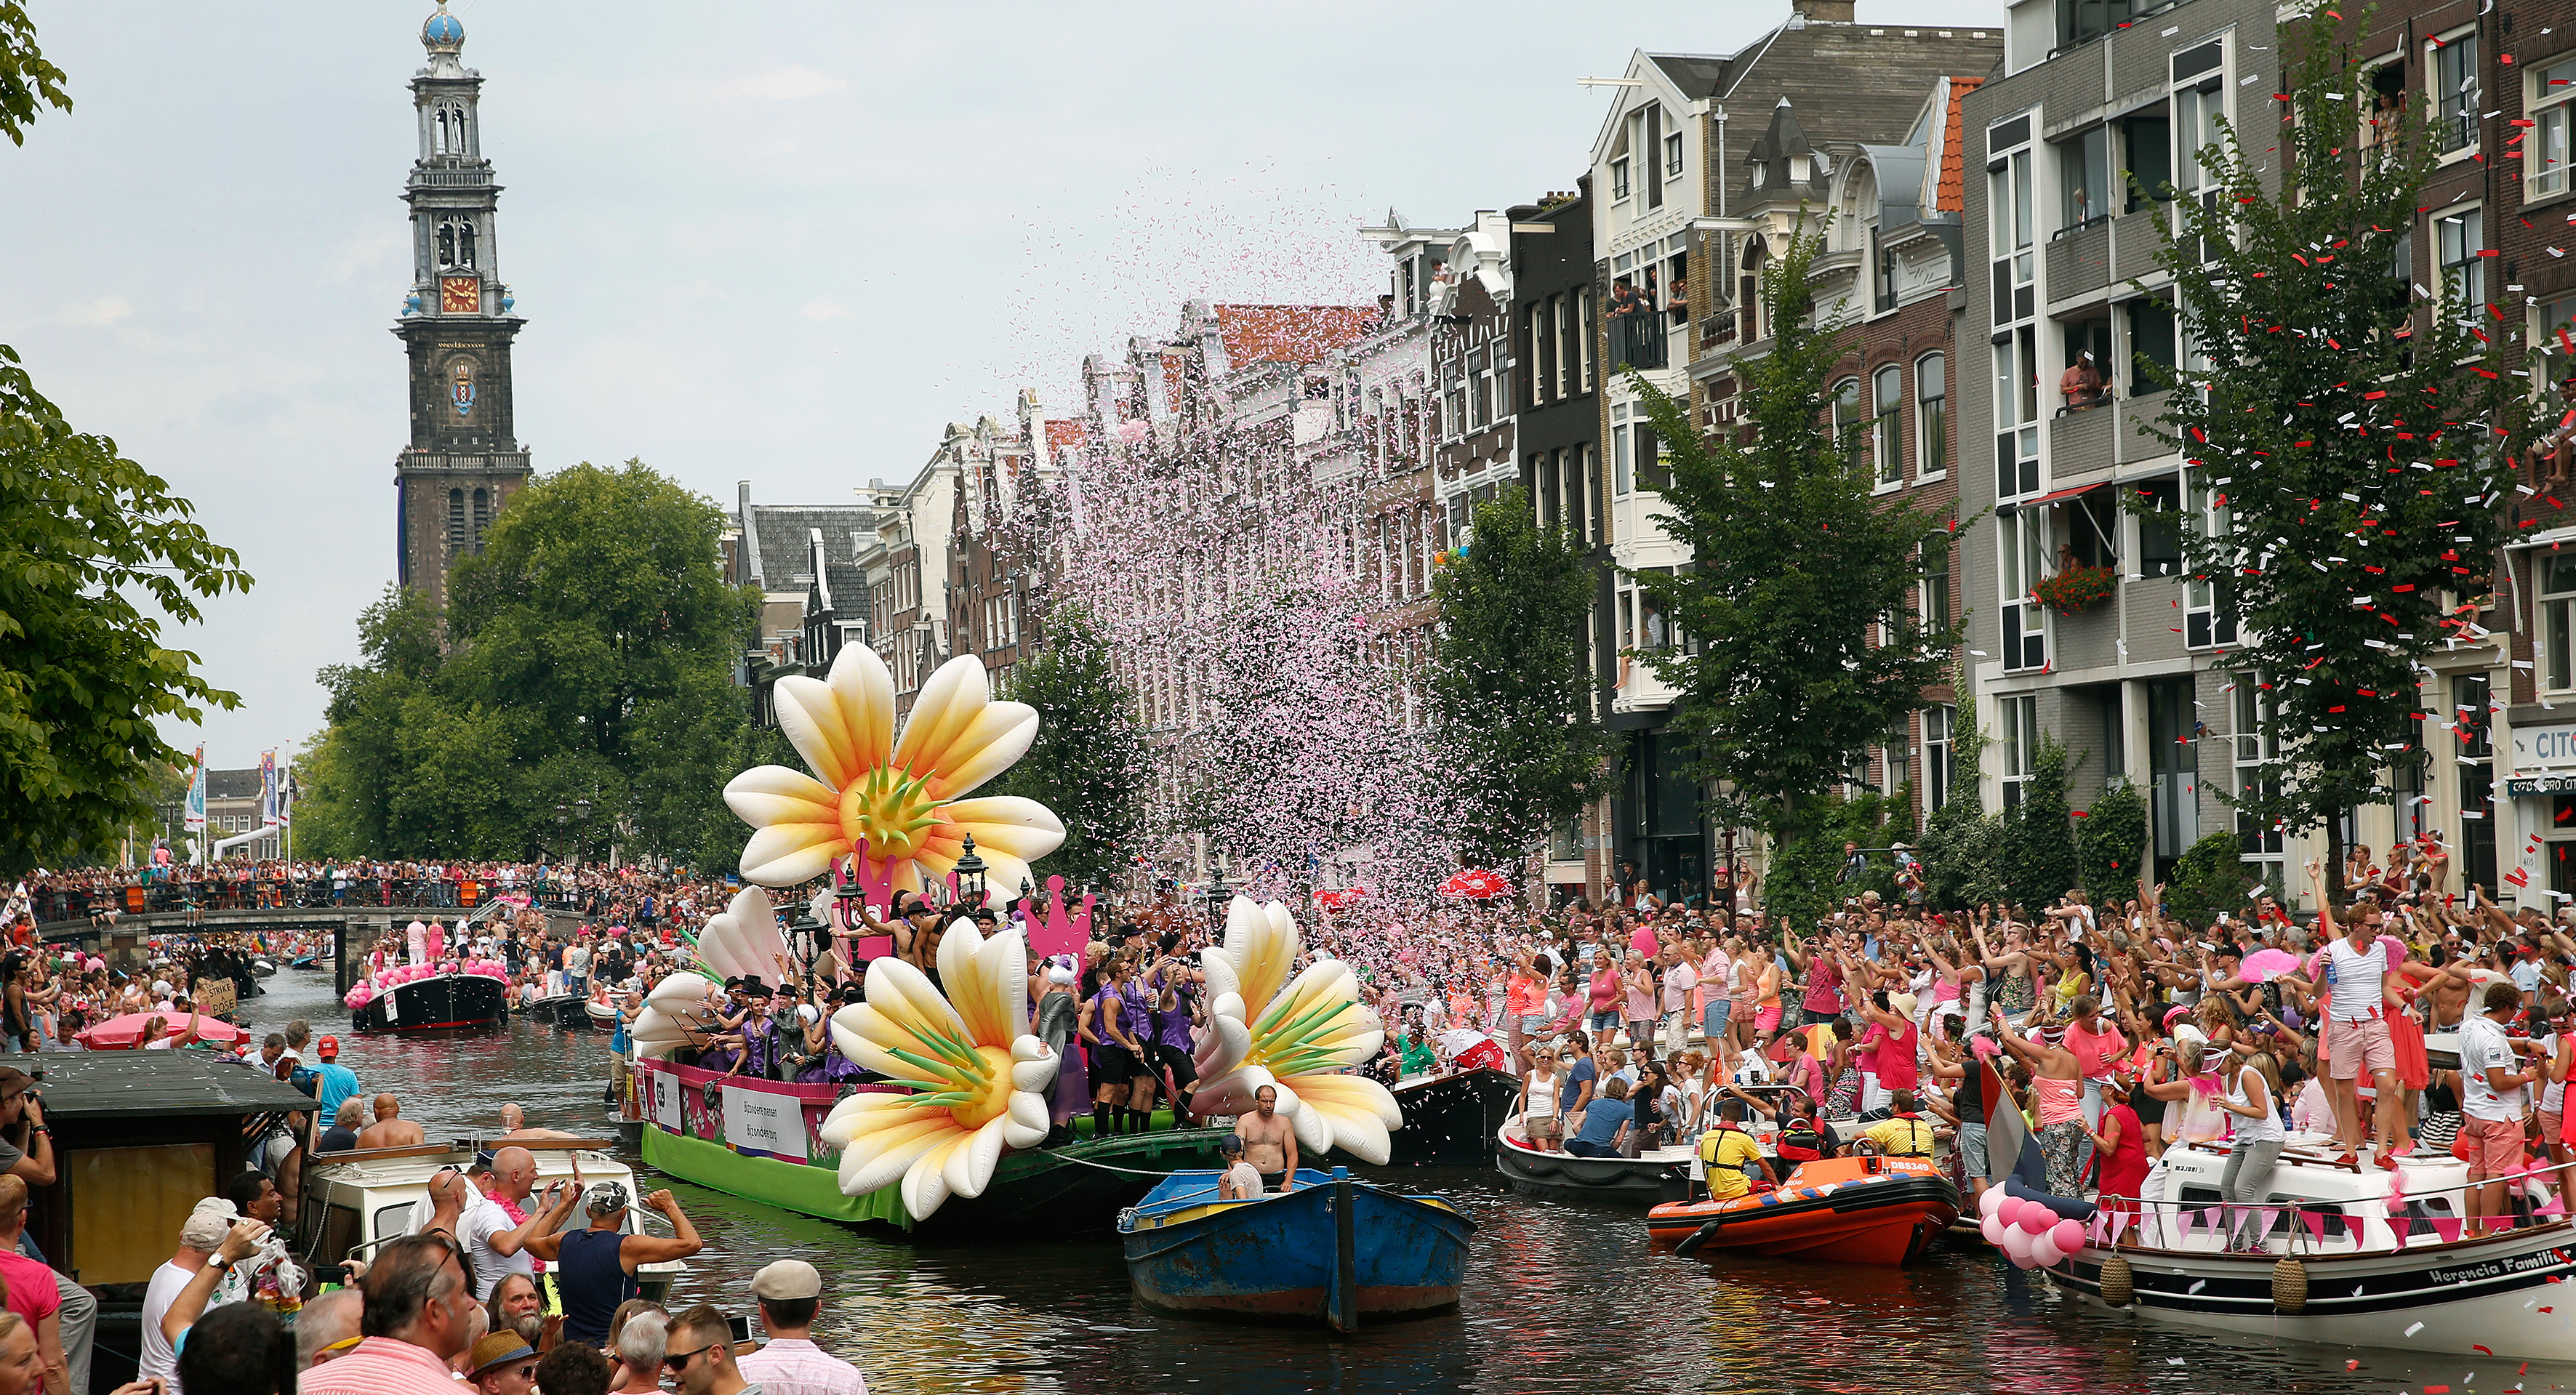 Volle boten met feestelijk uitgedoste deelnemers varen door de Prinsengracht tijdens de Canal Parade van de Gay Pride. Foto: ANP / Bas Czerwinski